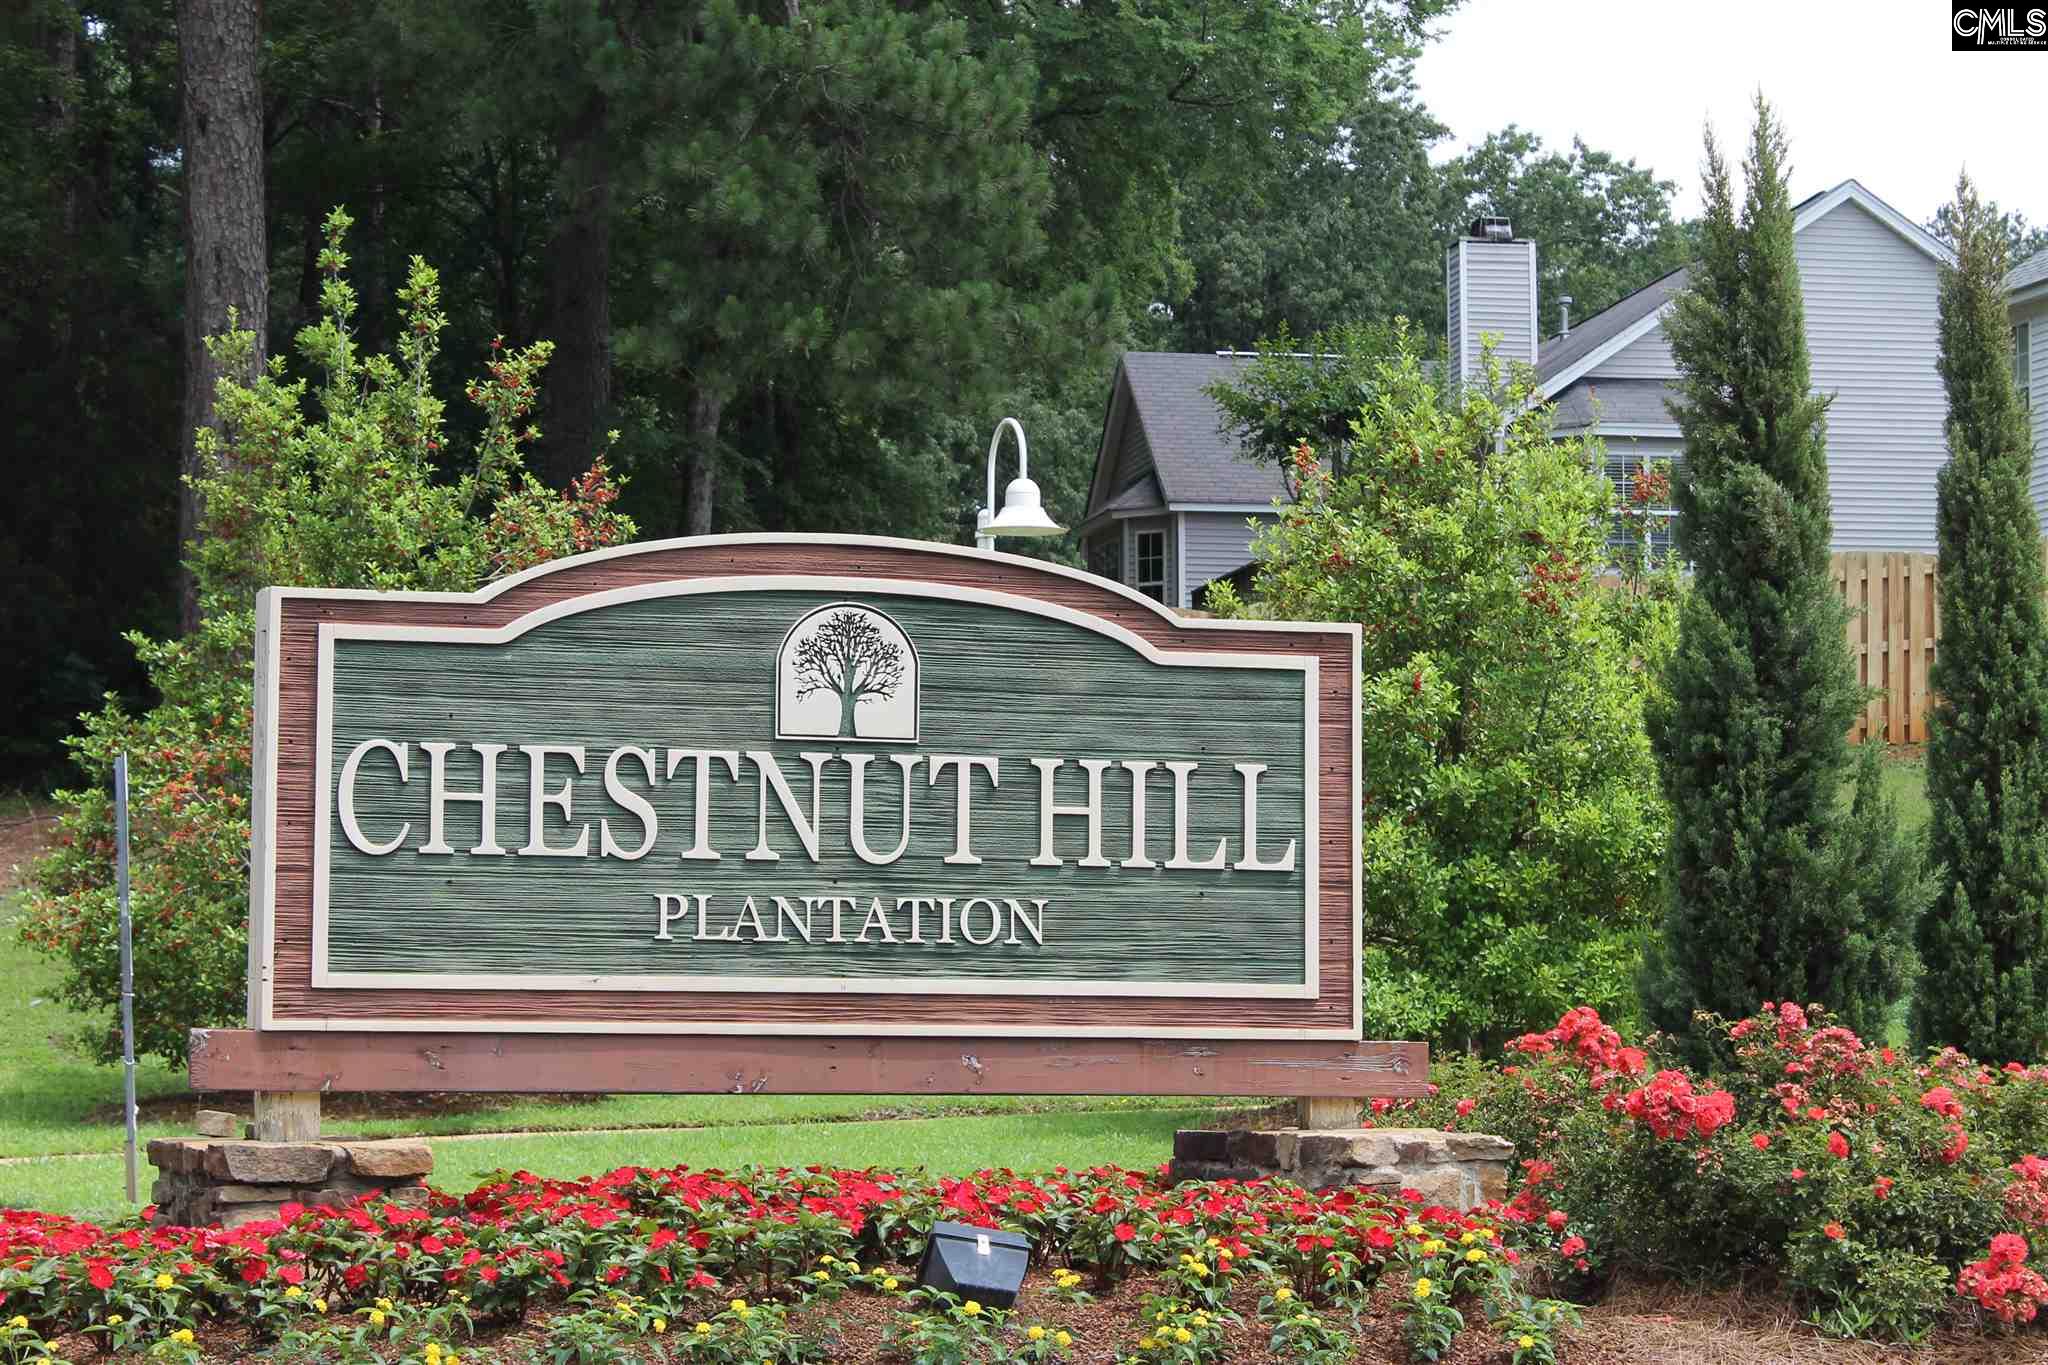 Chestnut Hill Plantation